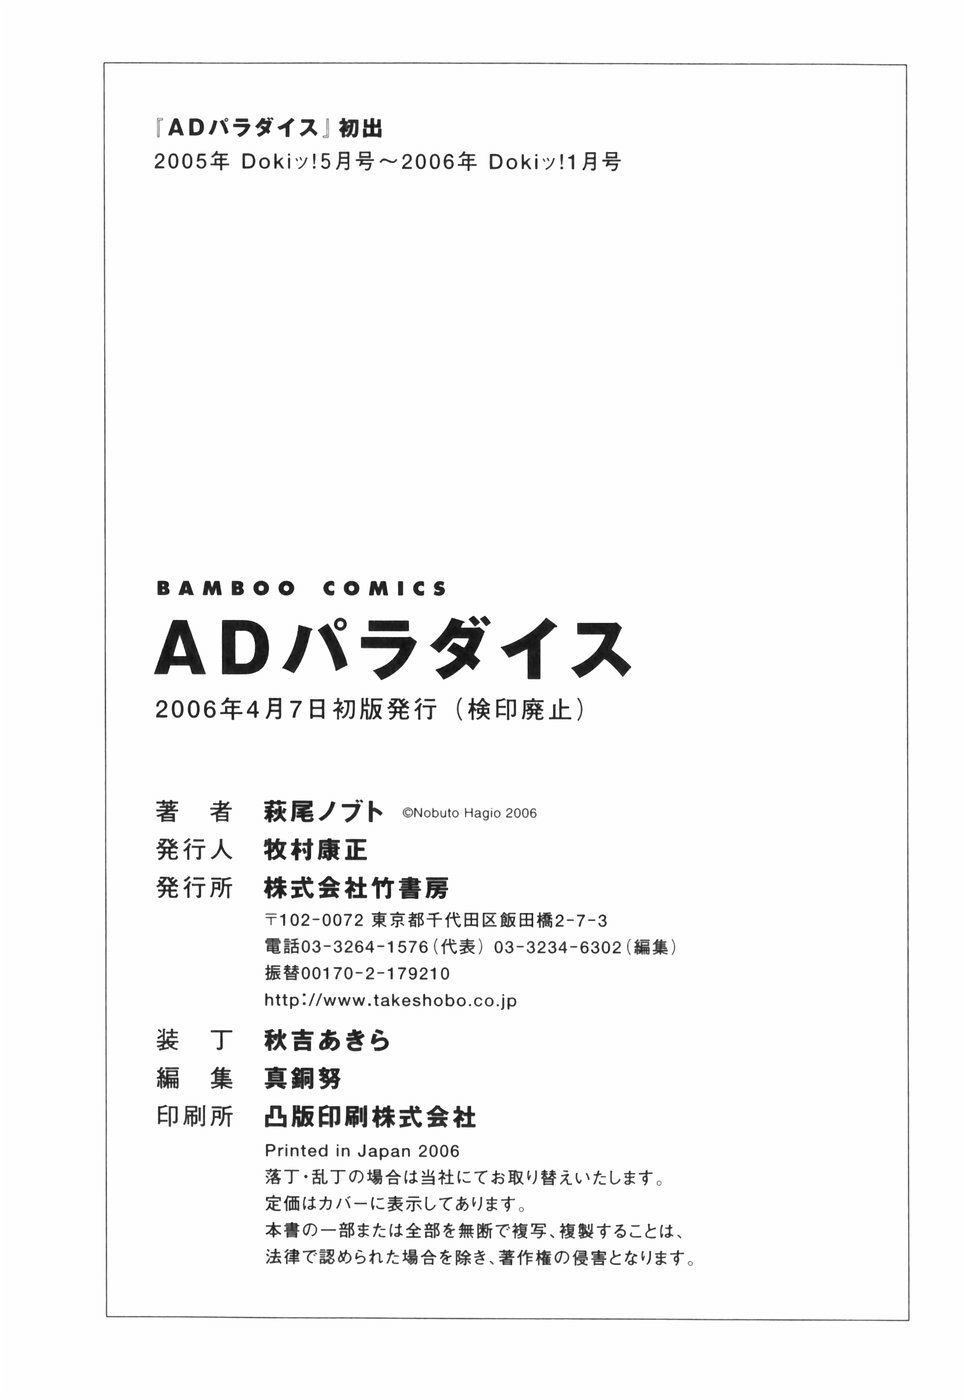 [Hagio Nobuto] AD Paradise page 226 full